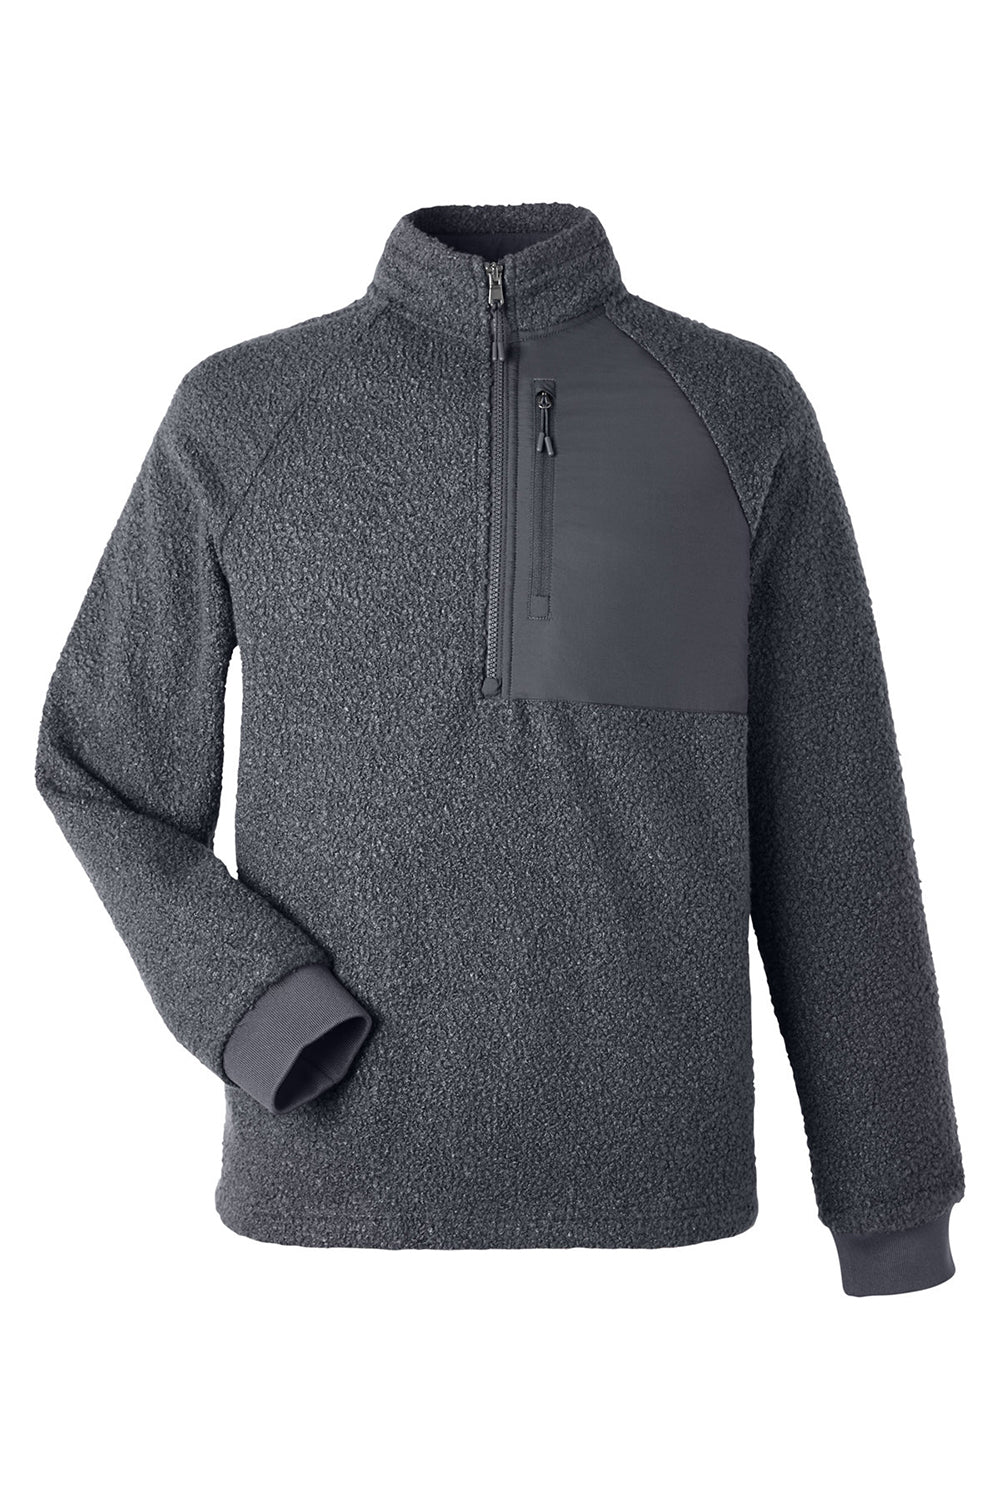 North End NE713 Mens Aura Sweater Fleece 1/4 Zip Sweatshirt Carbon Grey Flat Front